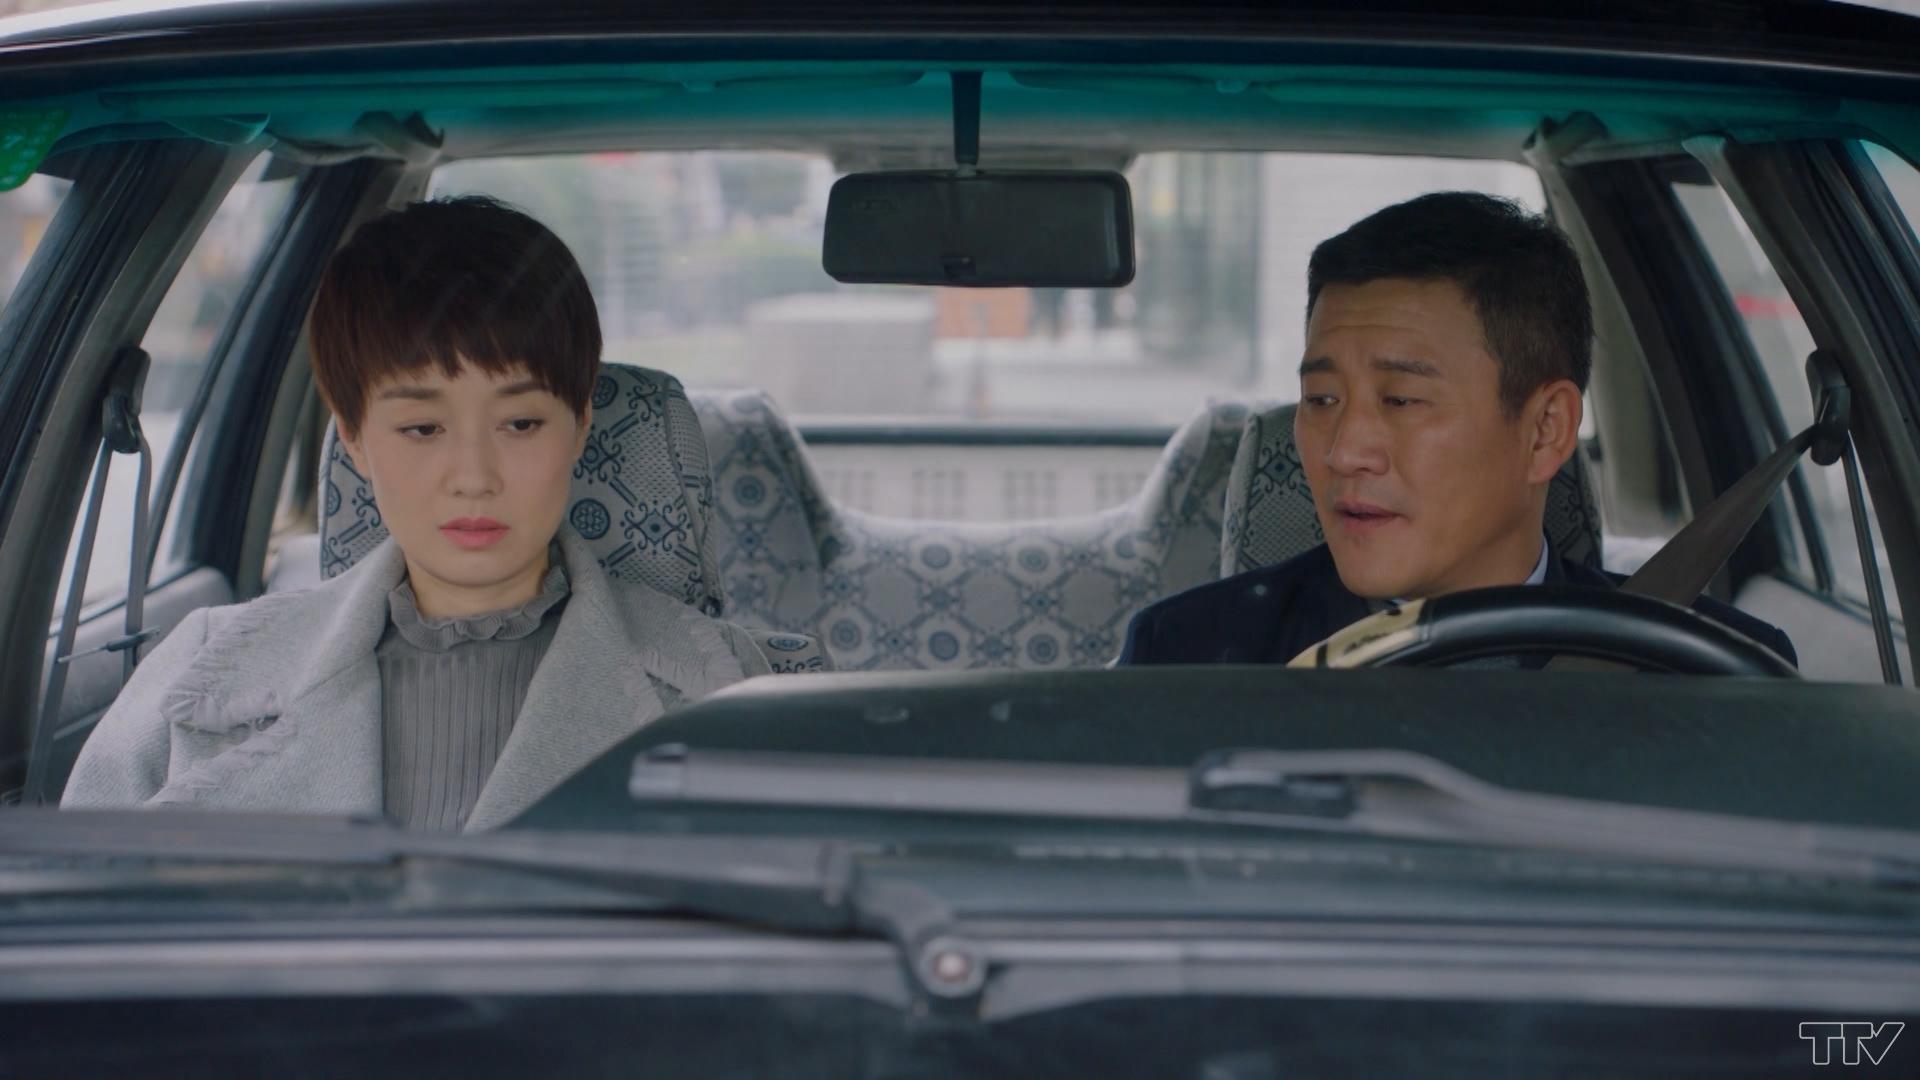 Trên xe, Tử Quân nói, từ nay anh Kim không cần phải đưa đón mẹ con cô nữa. Cô thấy hai người không hợp nhau  và không muốn làm phiền anh.